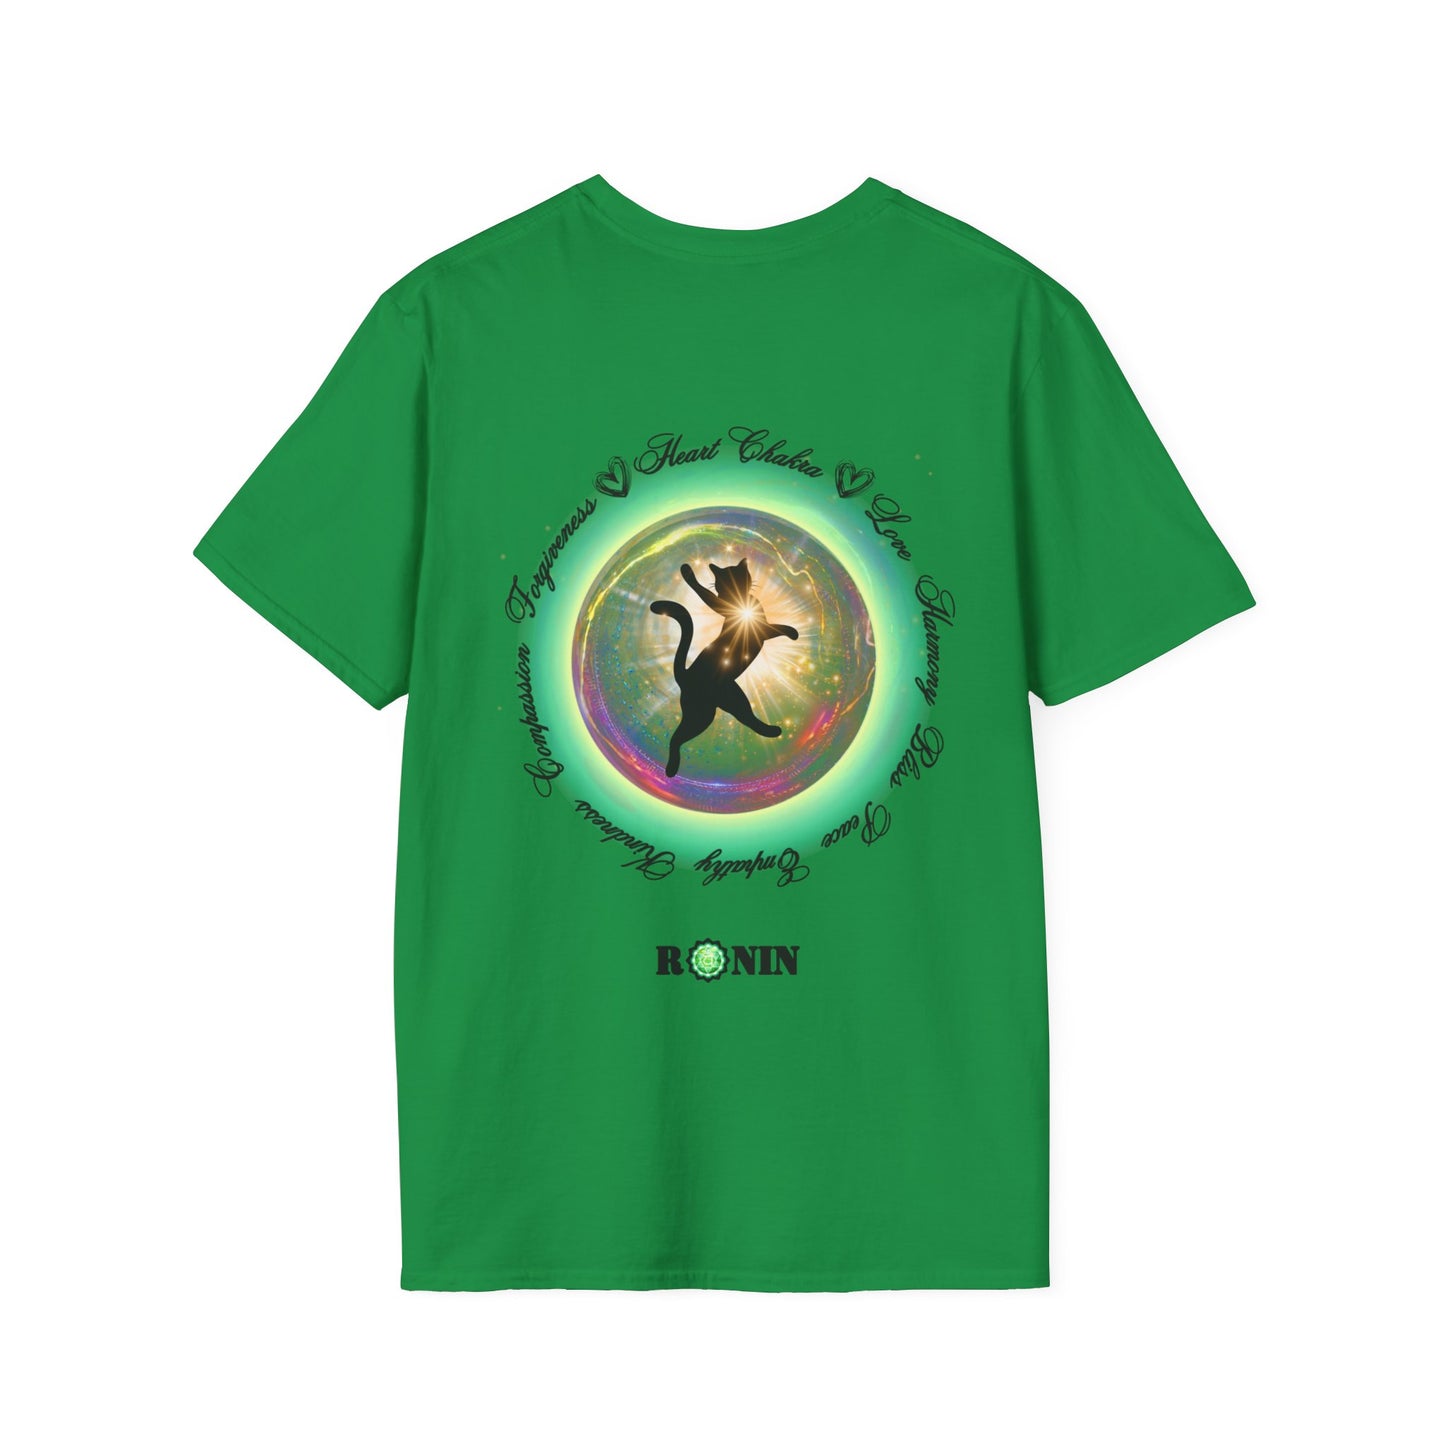 CAT CHAKRA SERIES - HEART CHAKRA- Unisex Softstyle T-Shirt